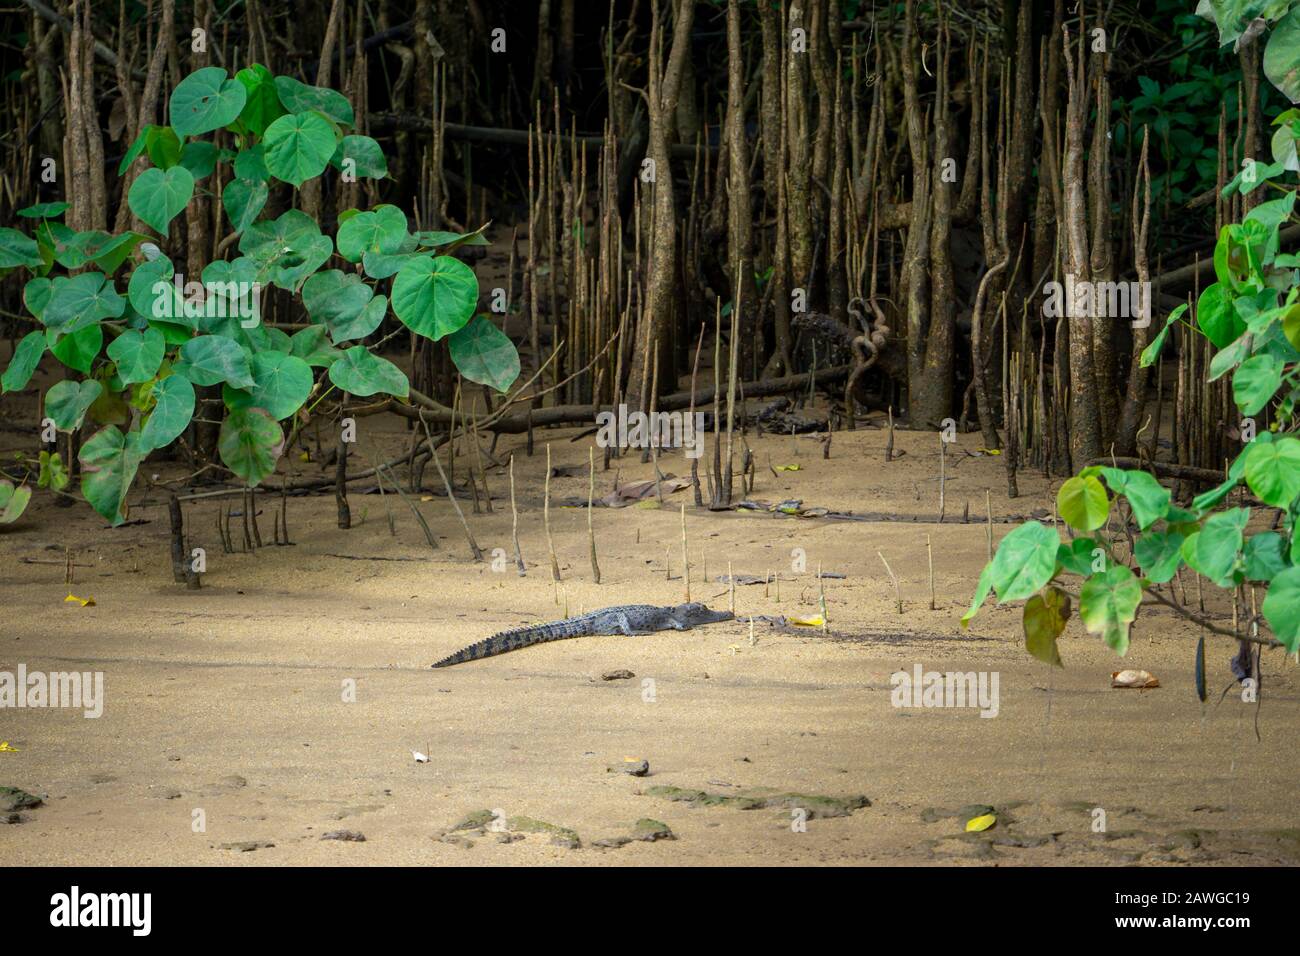 Juveniles Mündungskrokodil (Crocodylus porosus), das auf dem Madflat am Ufer des Johnstone River, North Queensland, sonnenbaden soll Stockfoto